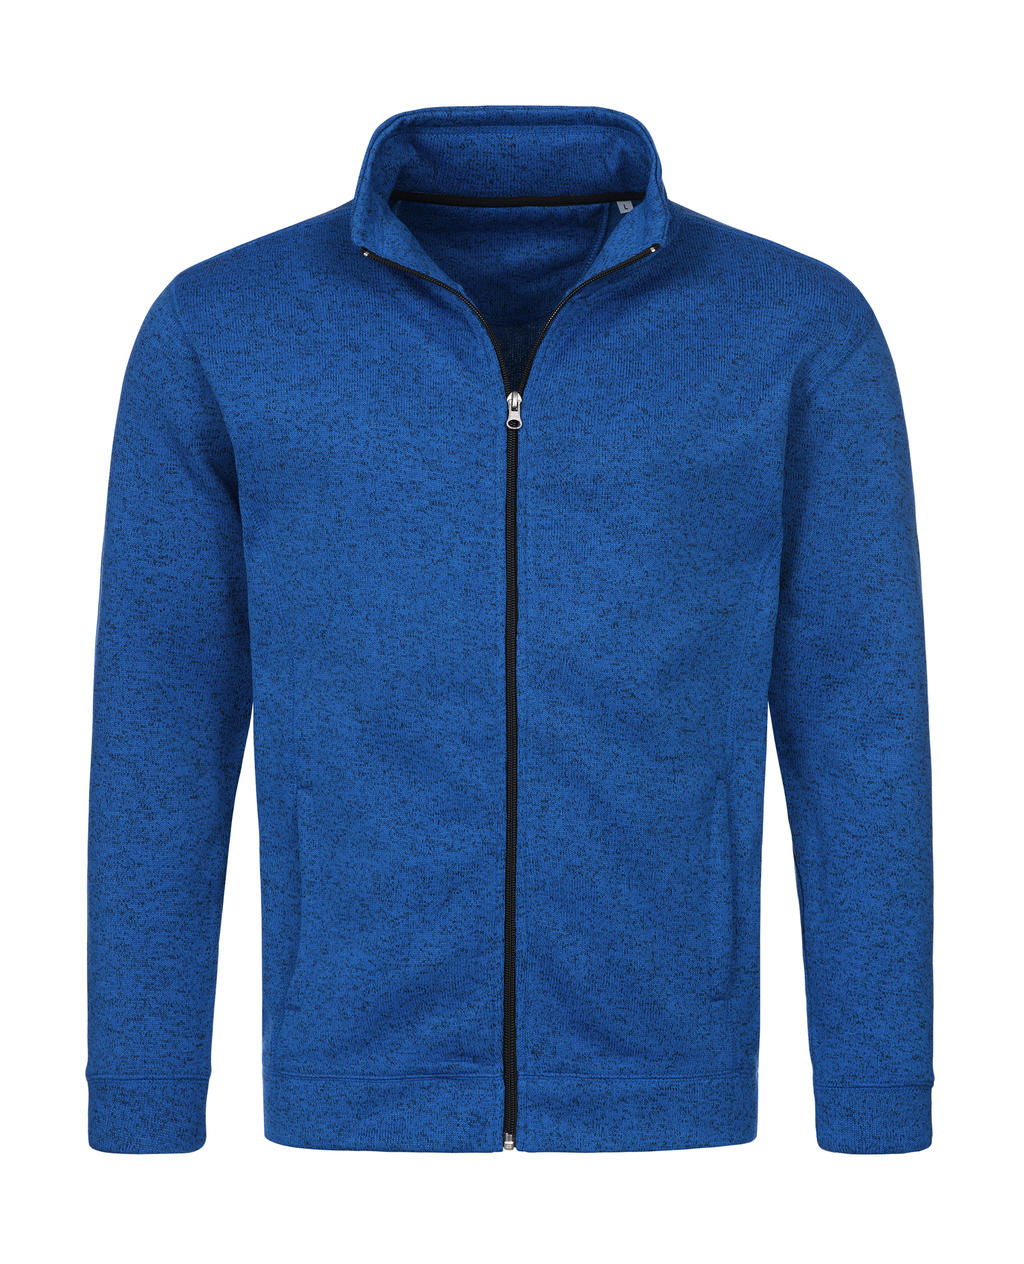  Knit Fleece Jacket in Farbe Blue Melange